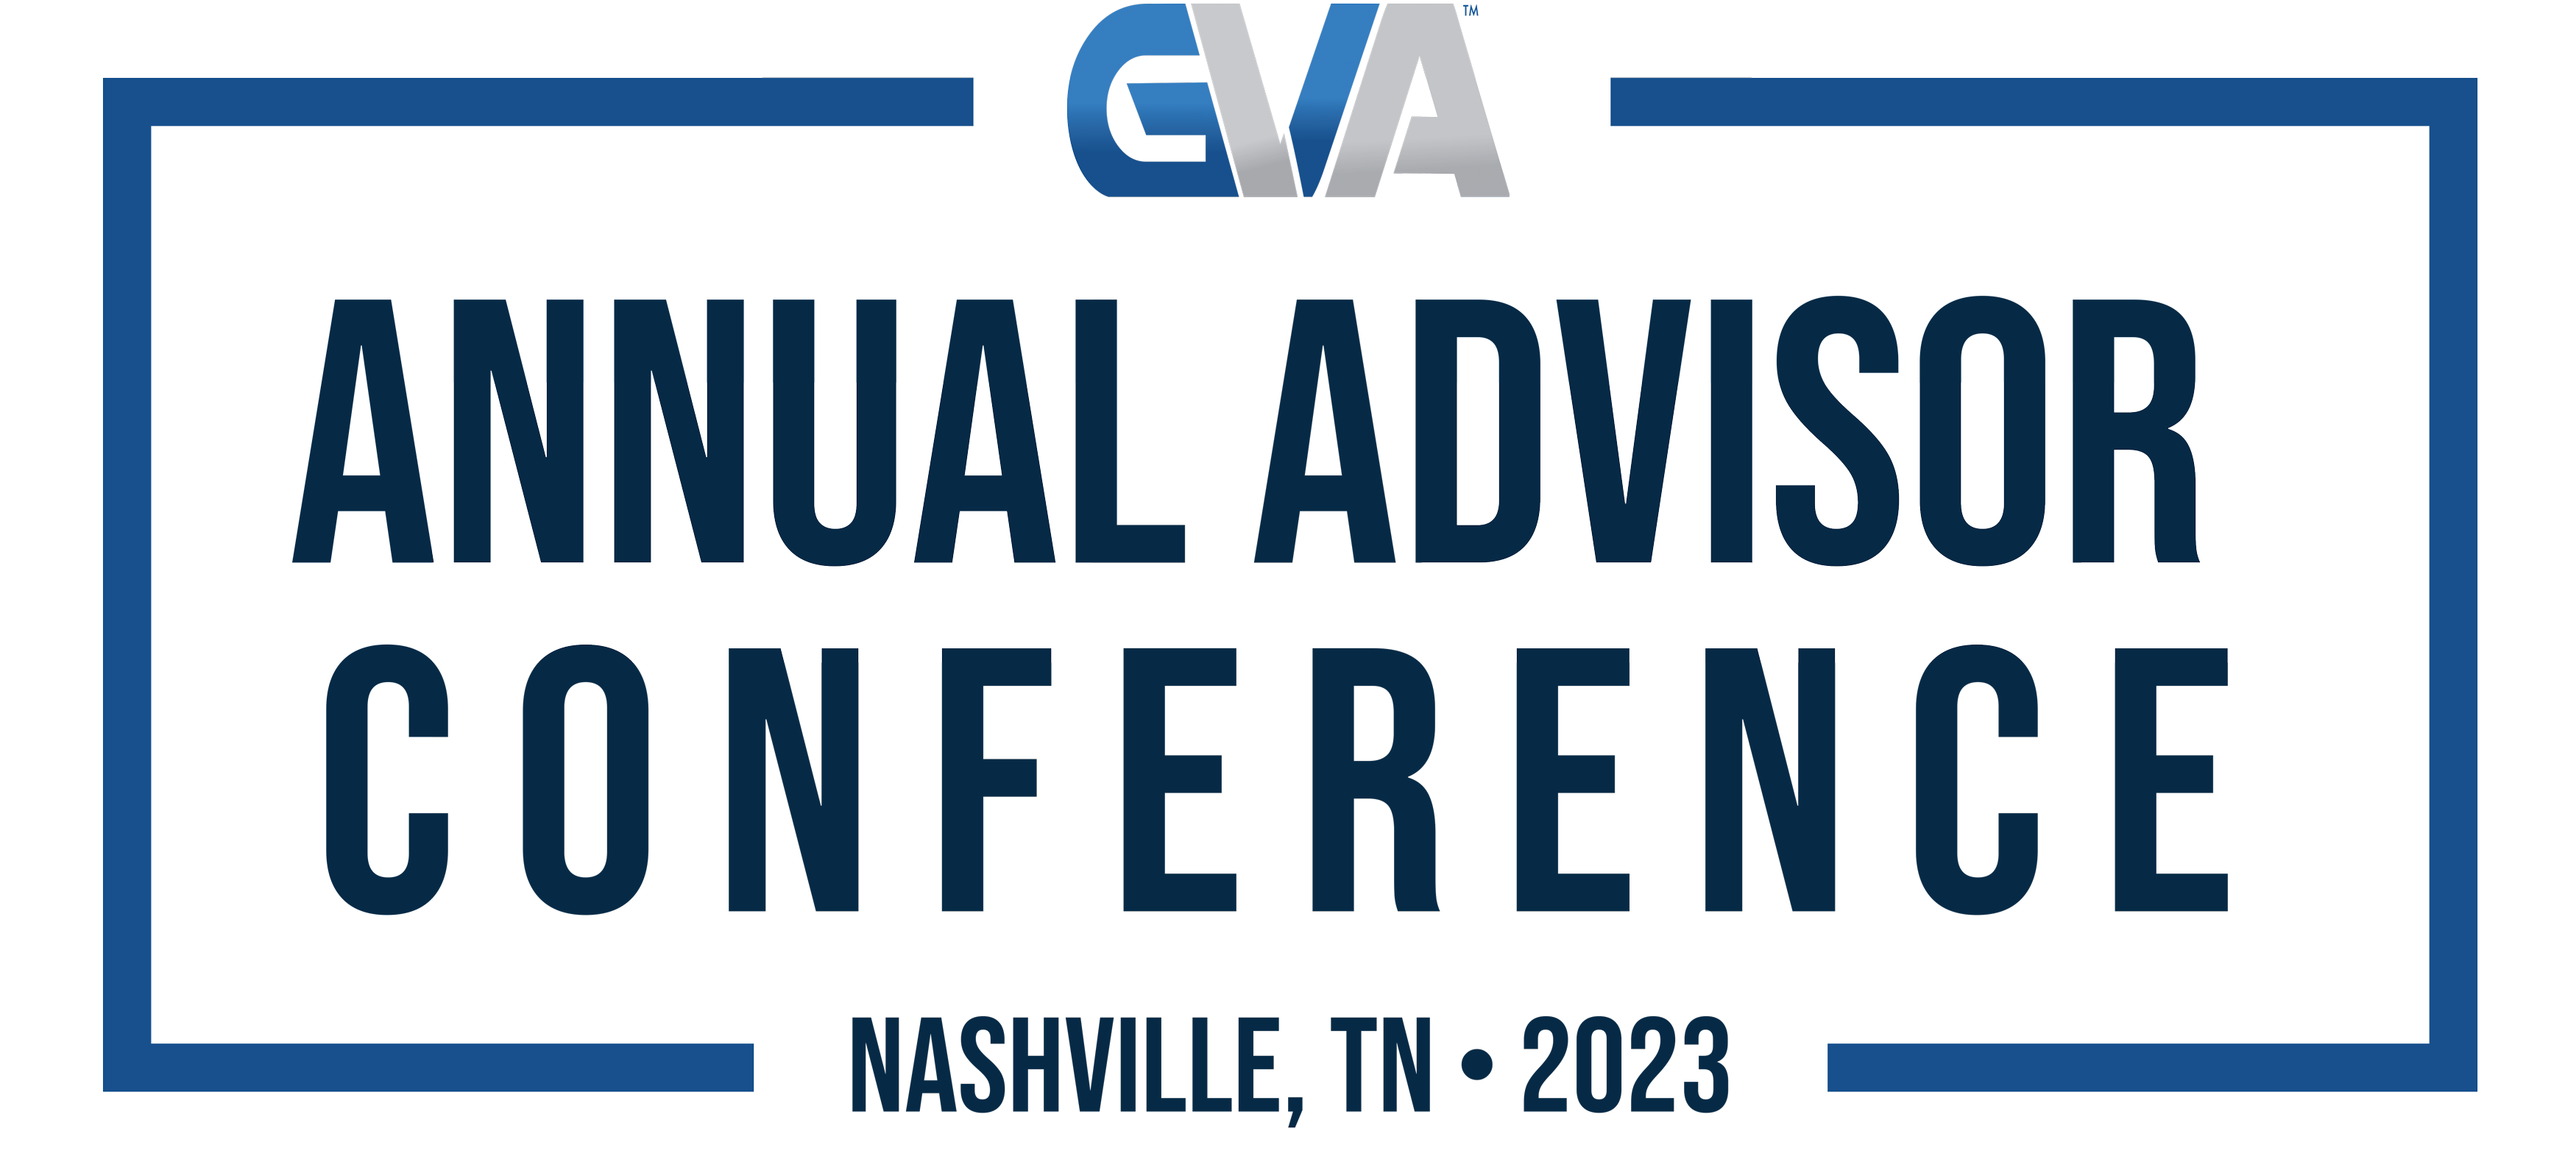 GVA Annual Advisor Conference ’23 – Nashville